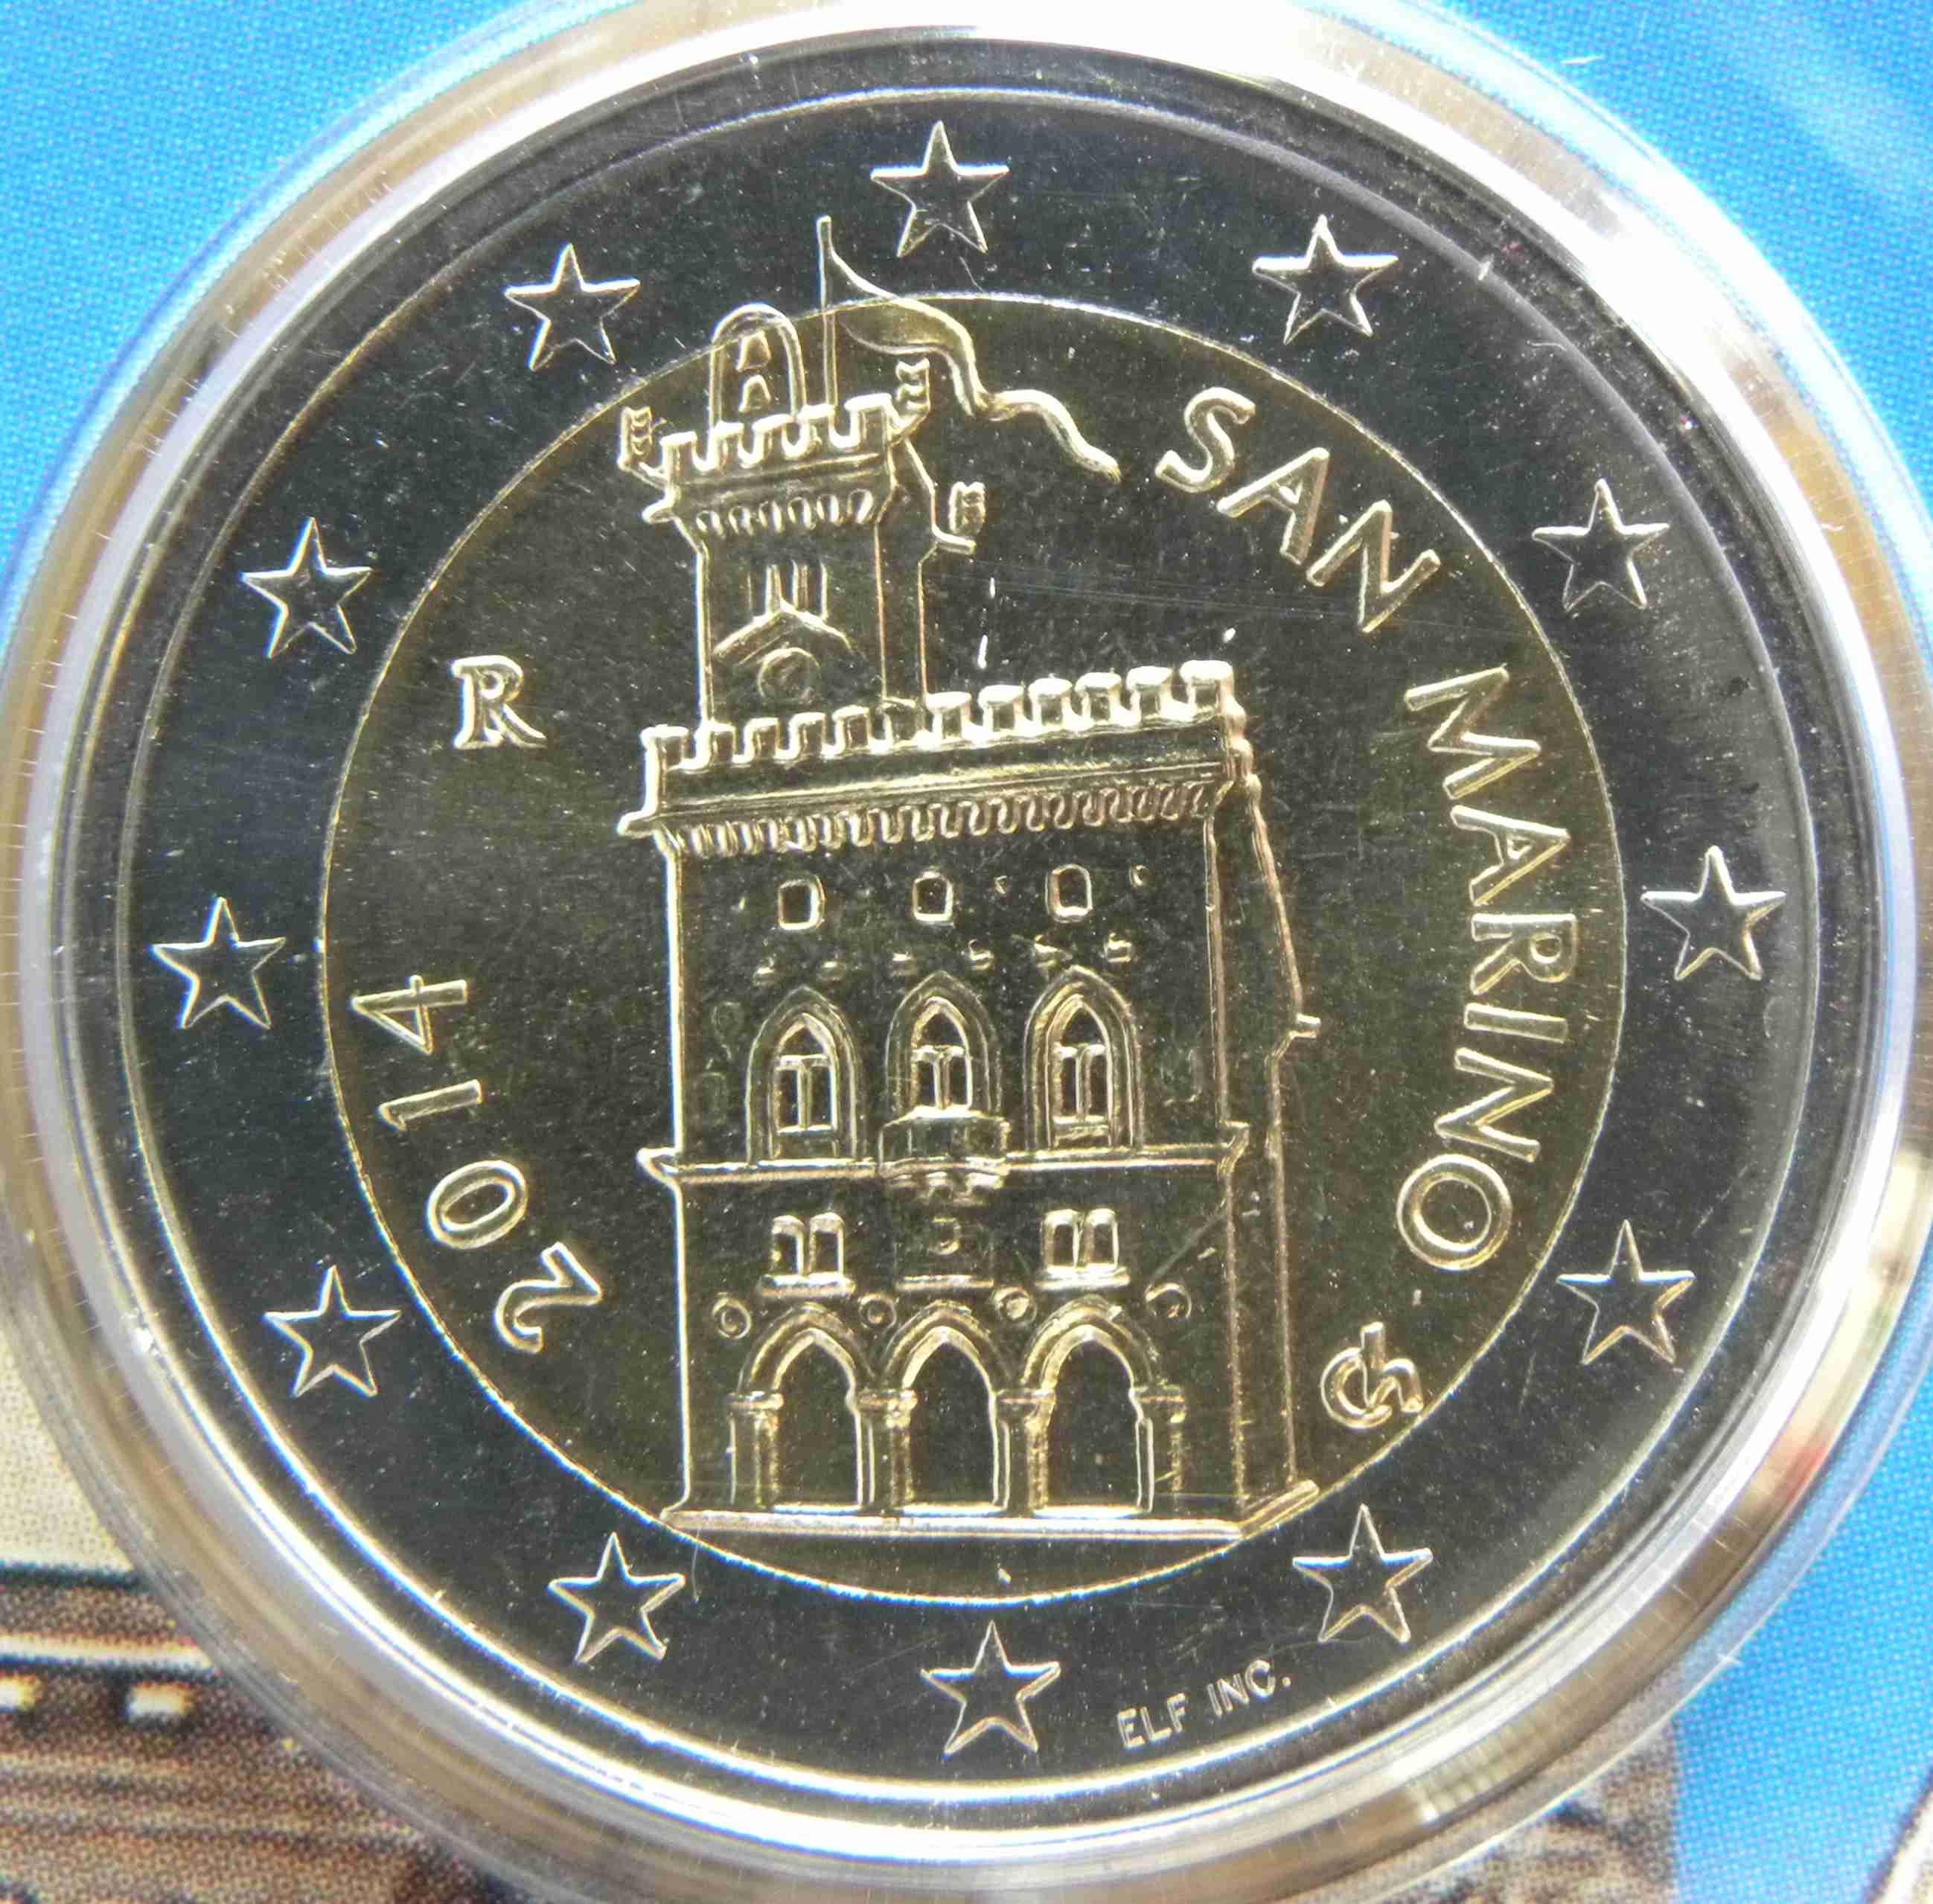 San Marino 2 Euro Münze 2014 - euro-muenzen.tv - Der Online Euromünzen